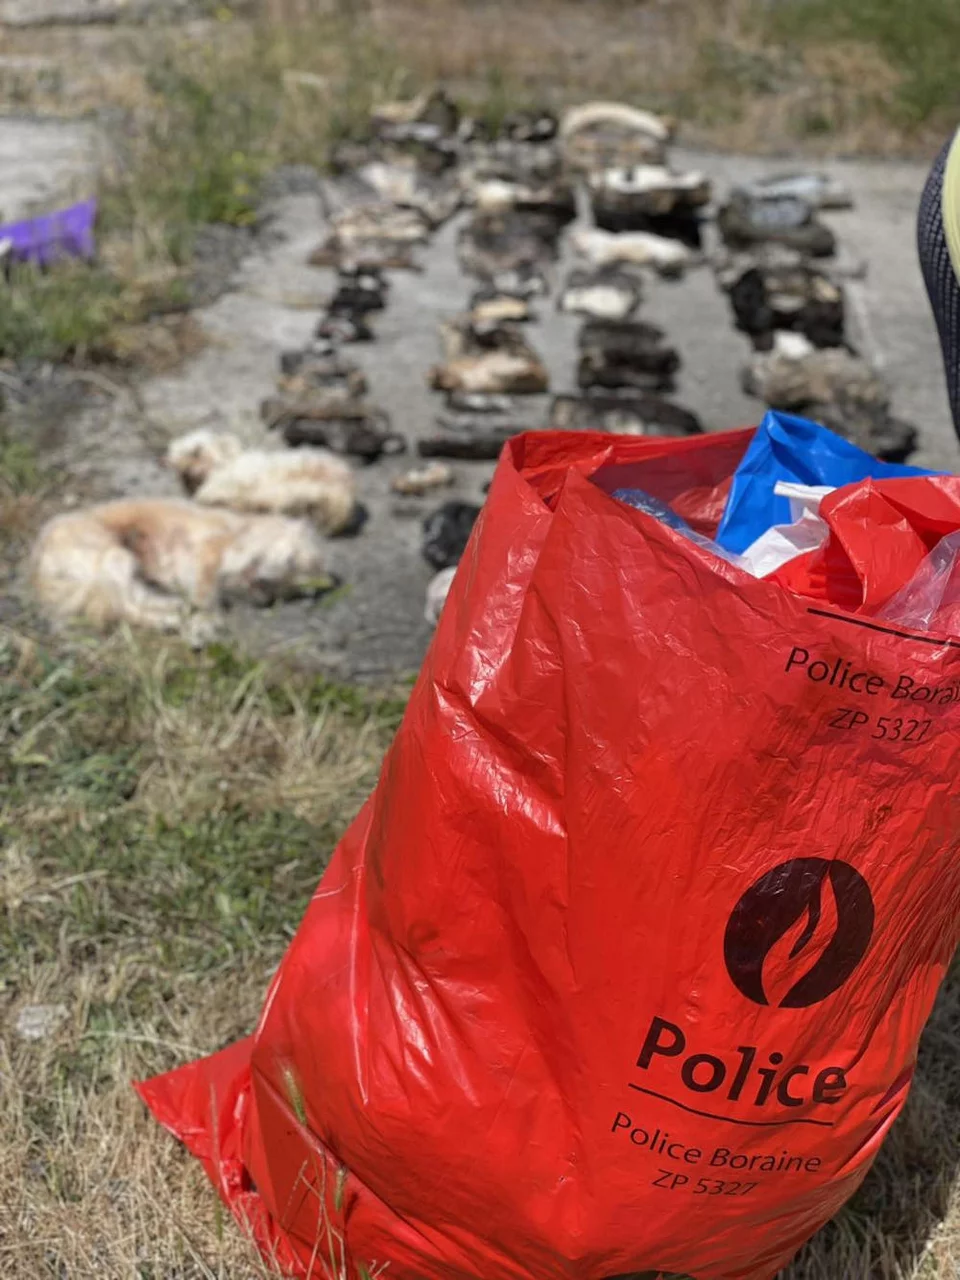 Φρίκη στο Βέλγιο: 75 γάτες και 3 σκύλοι βρέθηκαν σε καταψύκτες μέσα σε ένα σπίτι στο Μονς